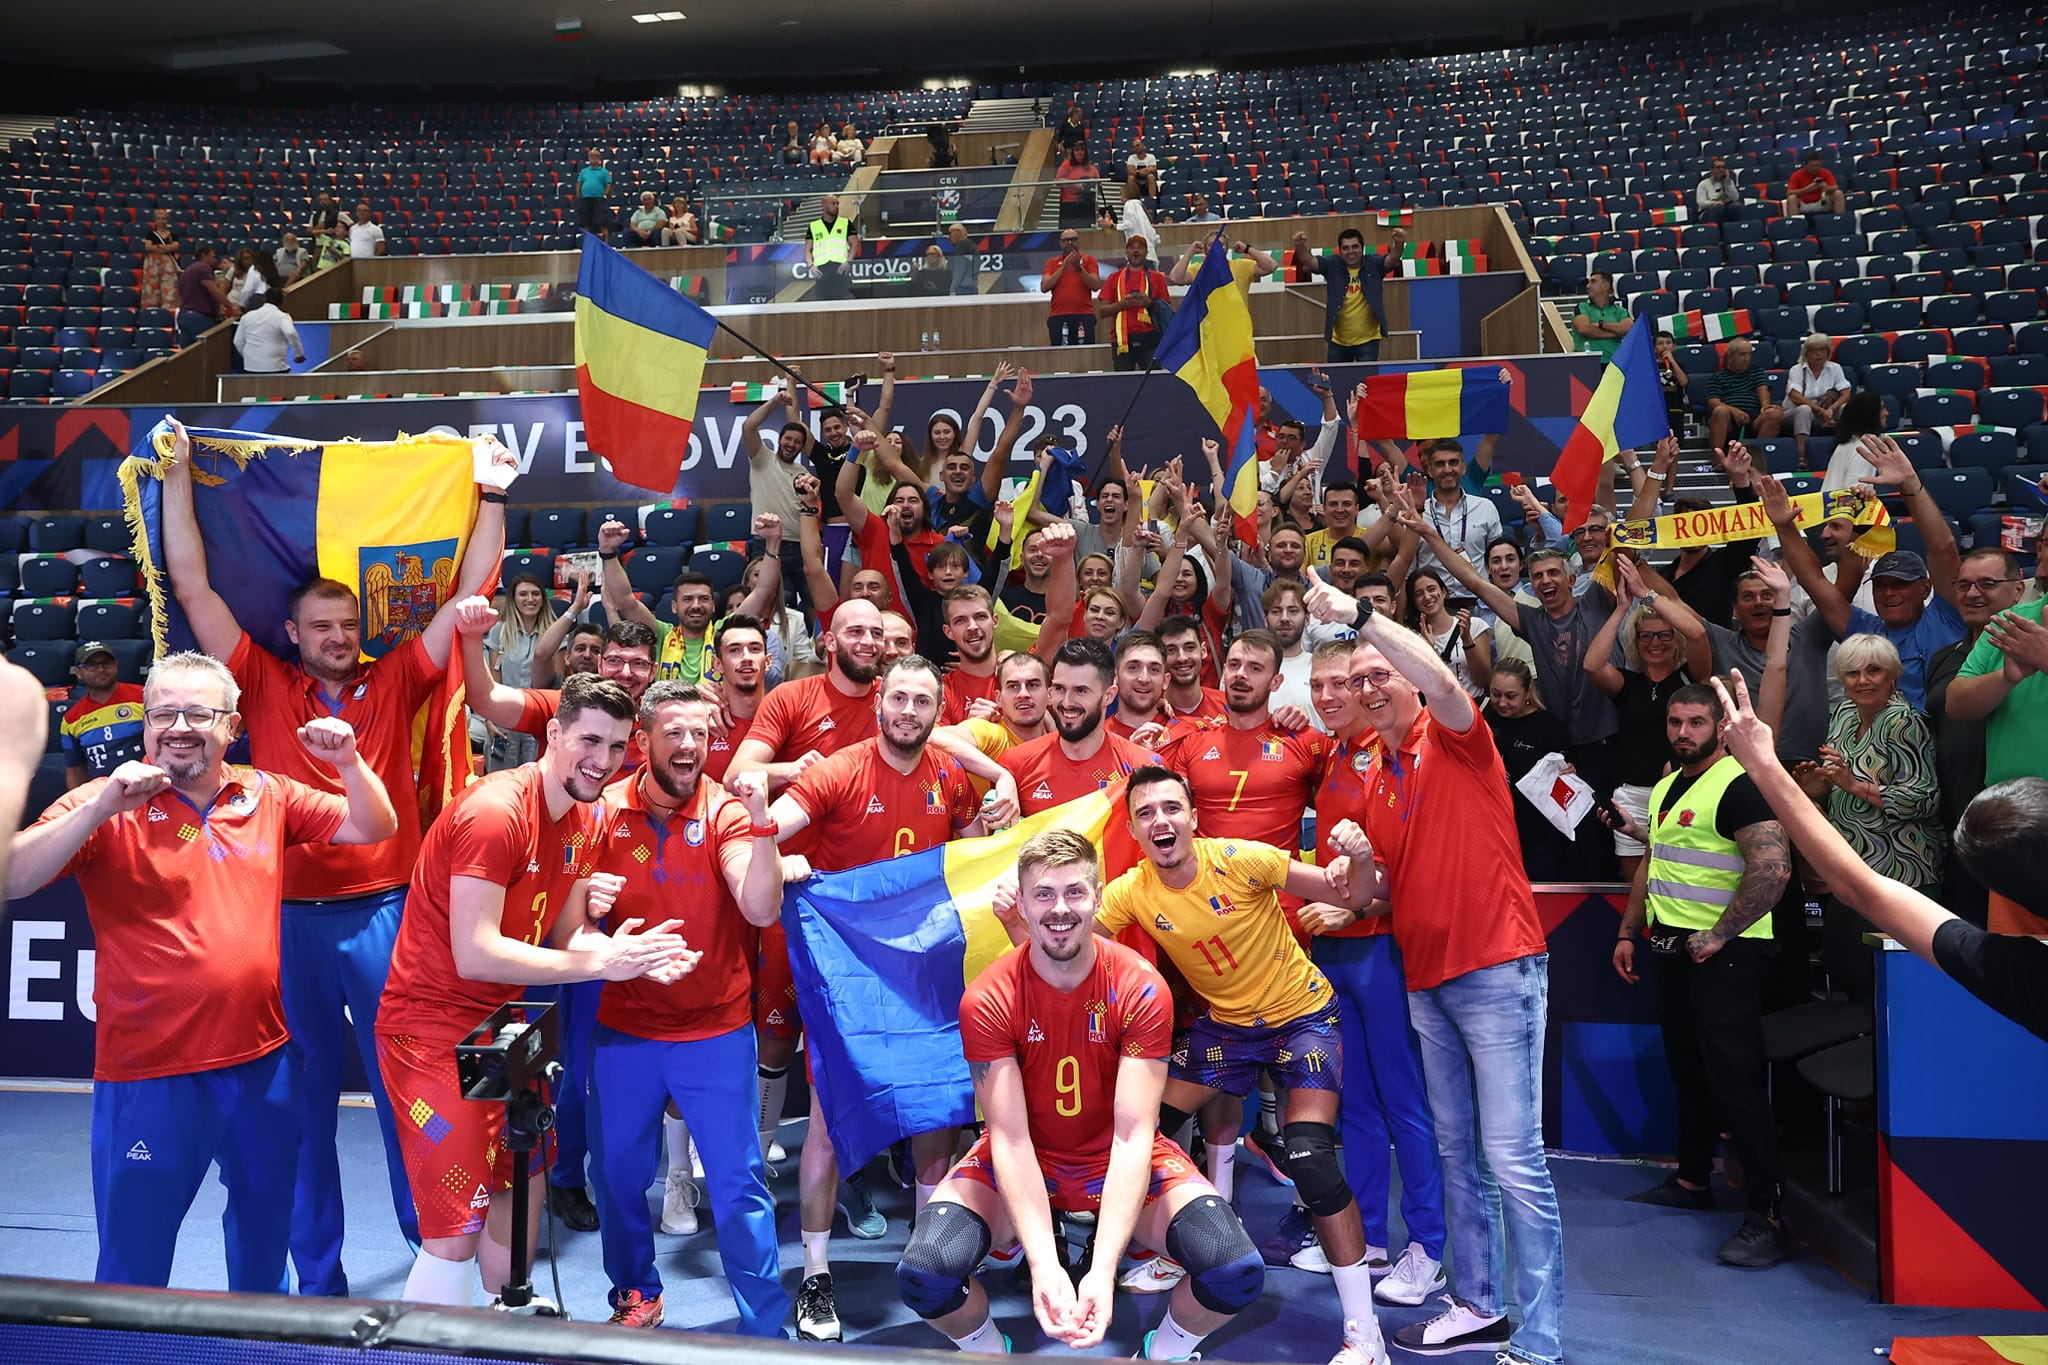 România s-a calificat dramatic în sferturile de finală la EuroVolley 2023. CSM Arcada a avut cinci reprezentanţi la această performanţă